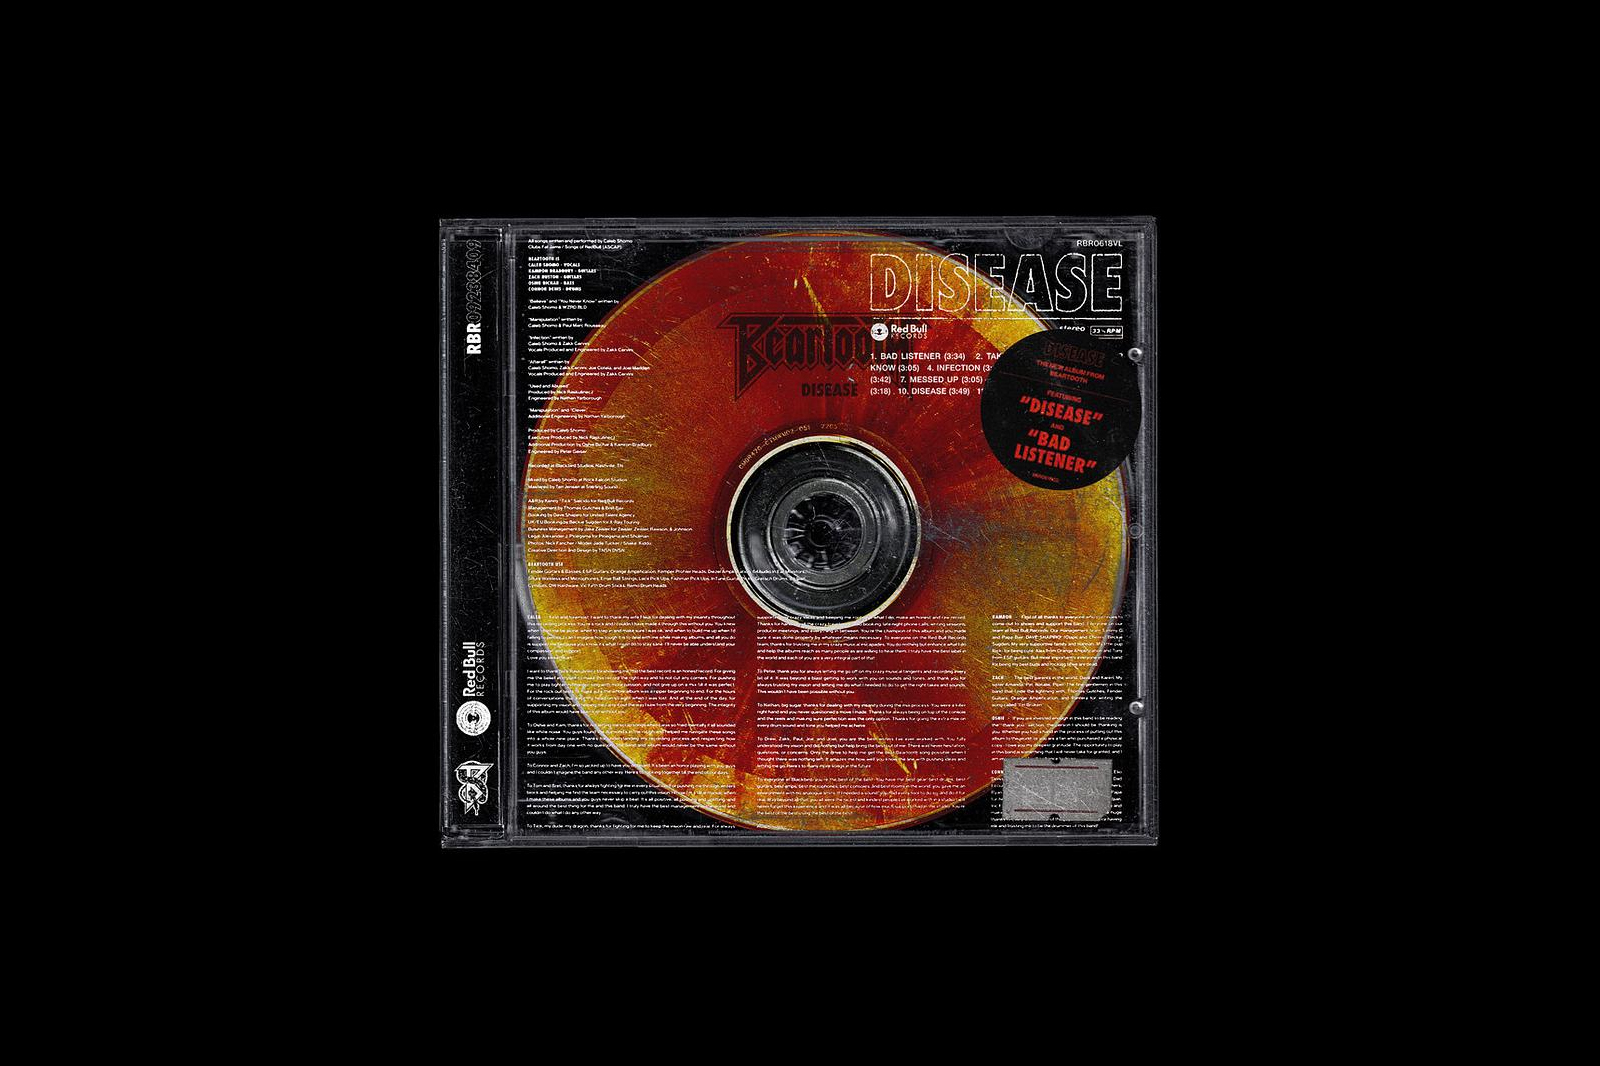 复古老物件潮流音乐电影CD光盘盒封面设计样机PSD模板 Vs